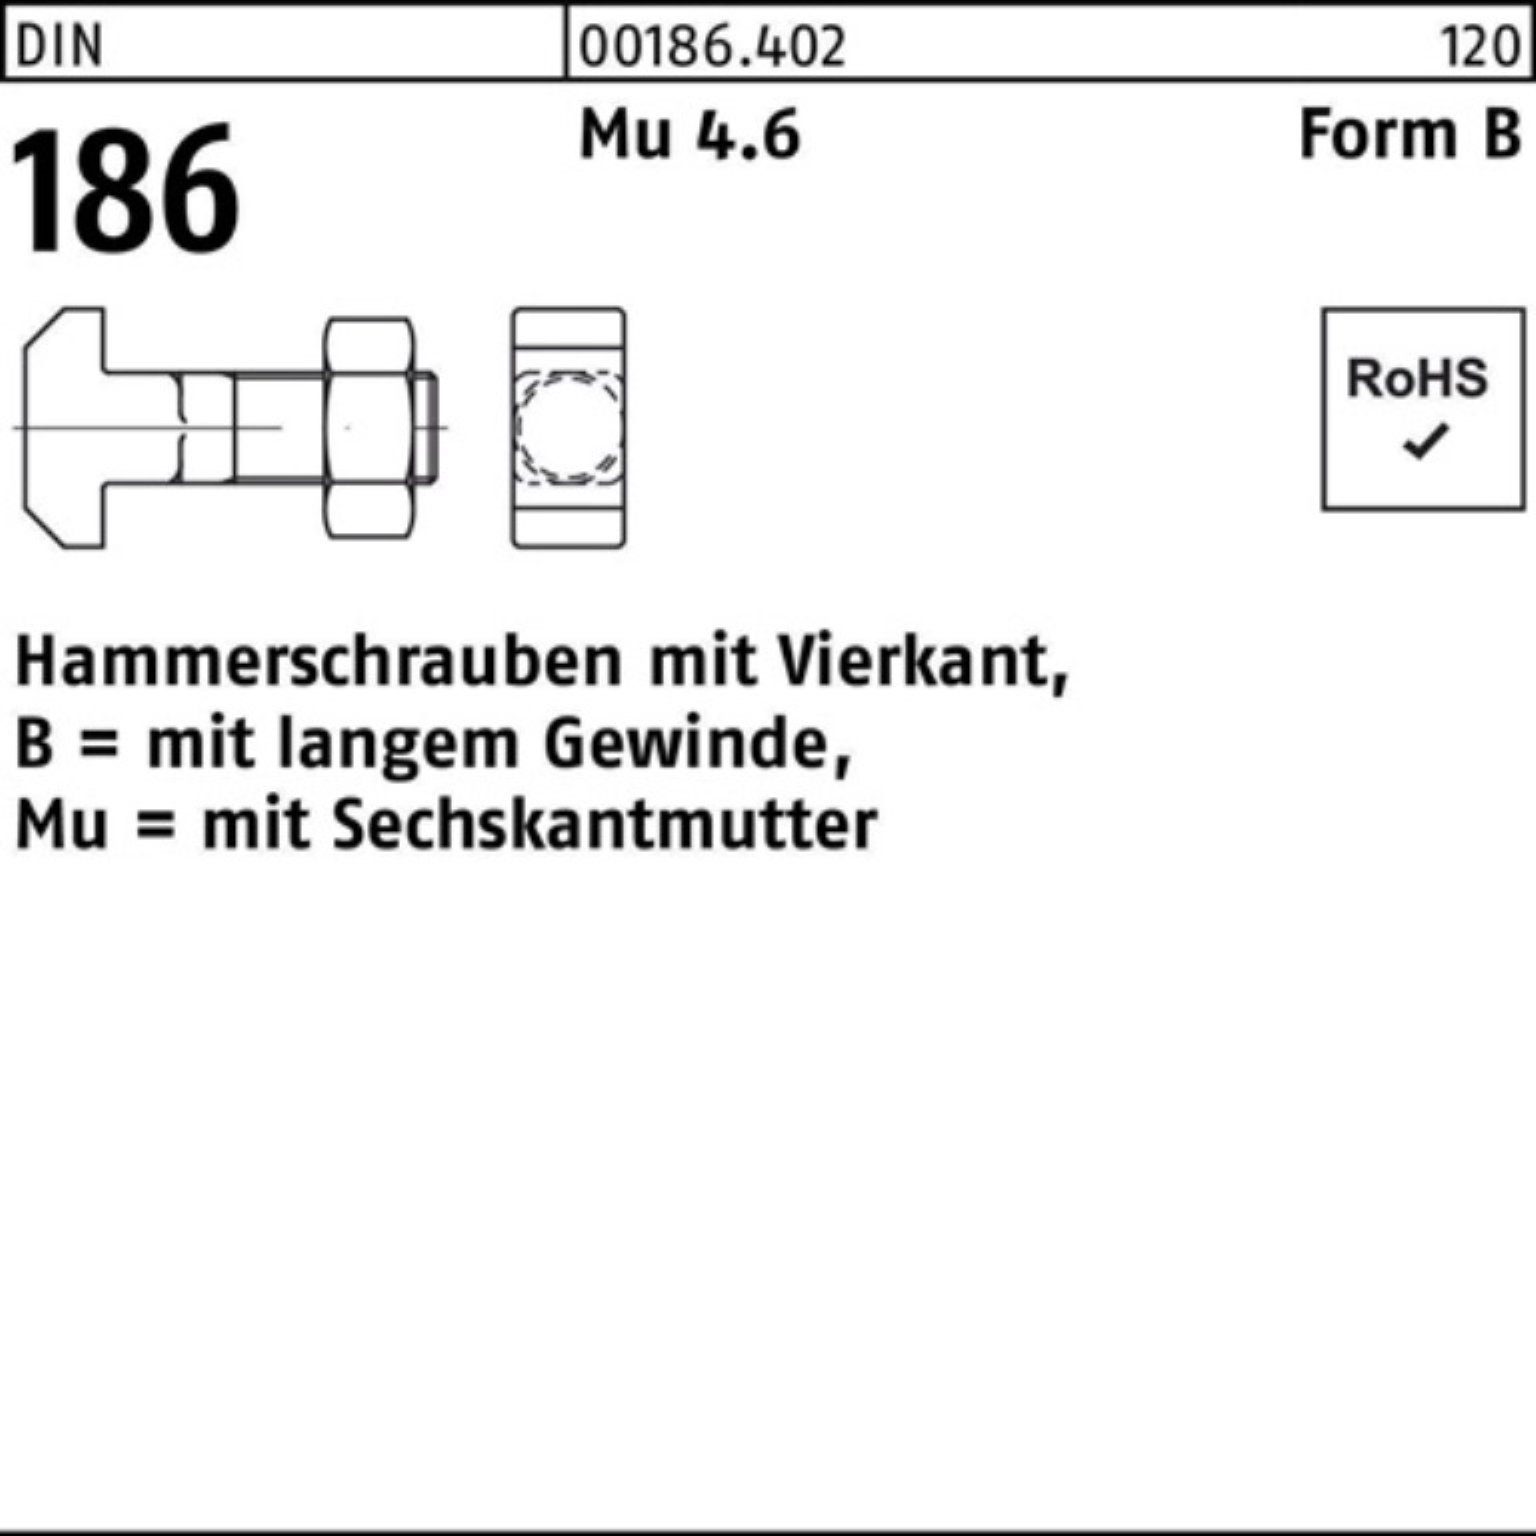 Reyher Schraube 100er Pack Hammerschraube DIN 186 FormB Vierkant 6-ktmutter BM 24x 120